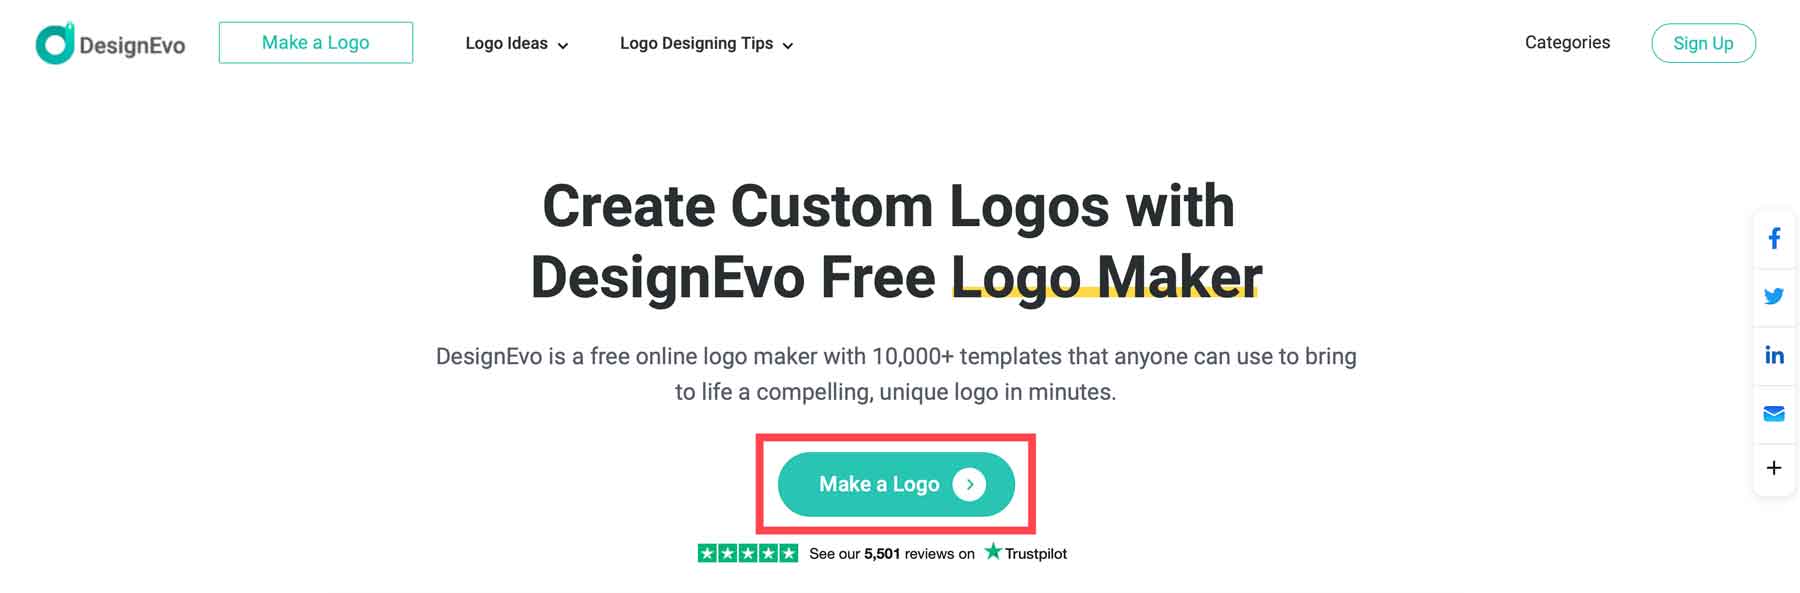 Make a logo